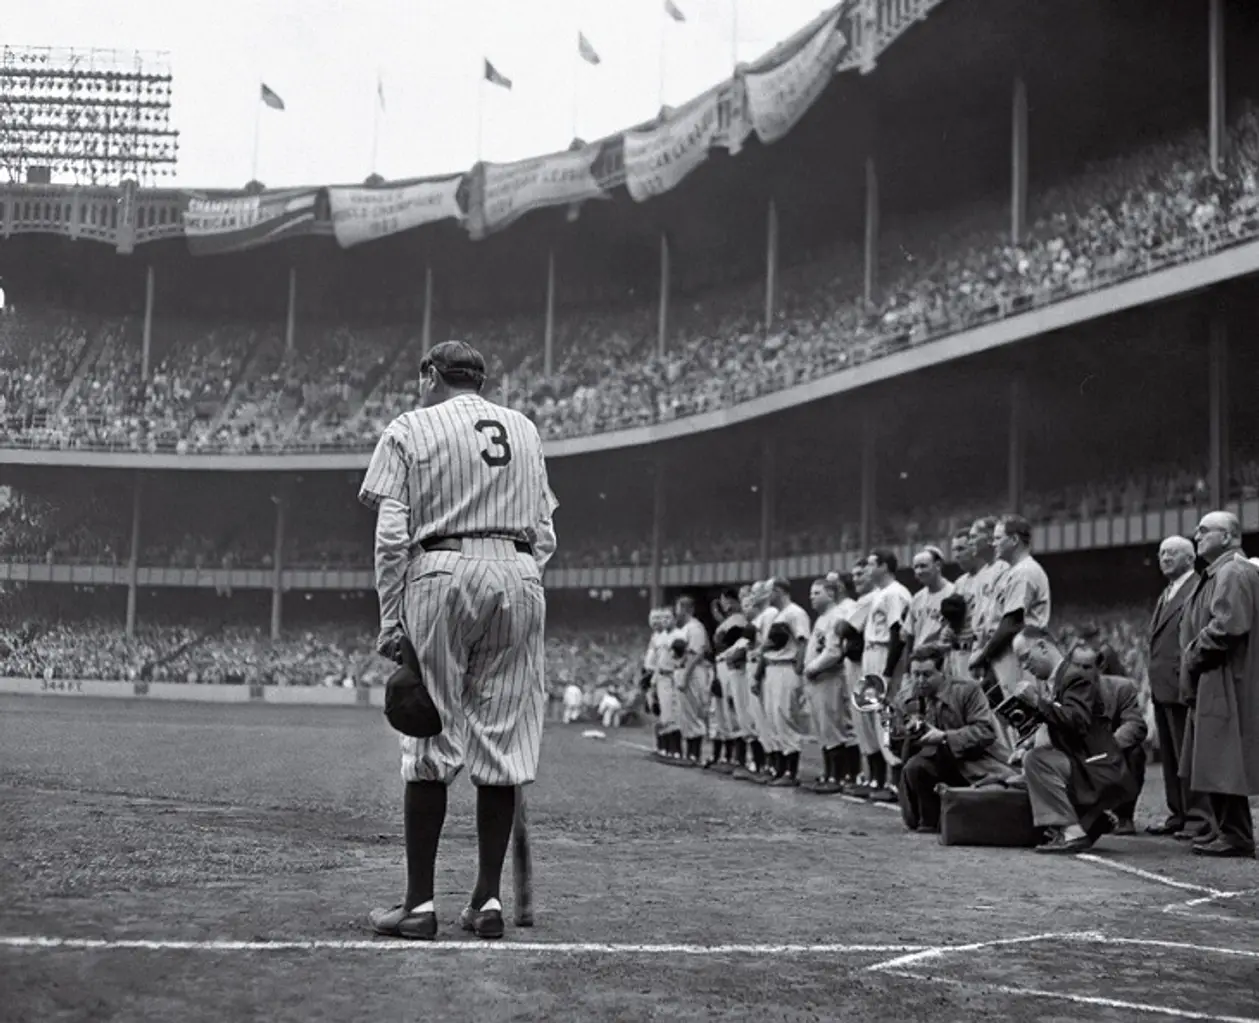 Первое спортивное фото, которое получило Пулитцеровскую премию: легендарный бейсболист Бэйб Рут прощается с болельщиками